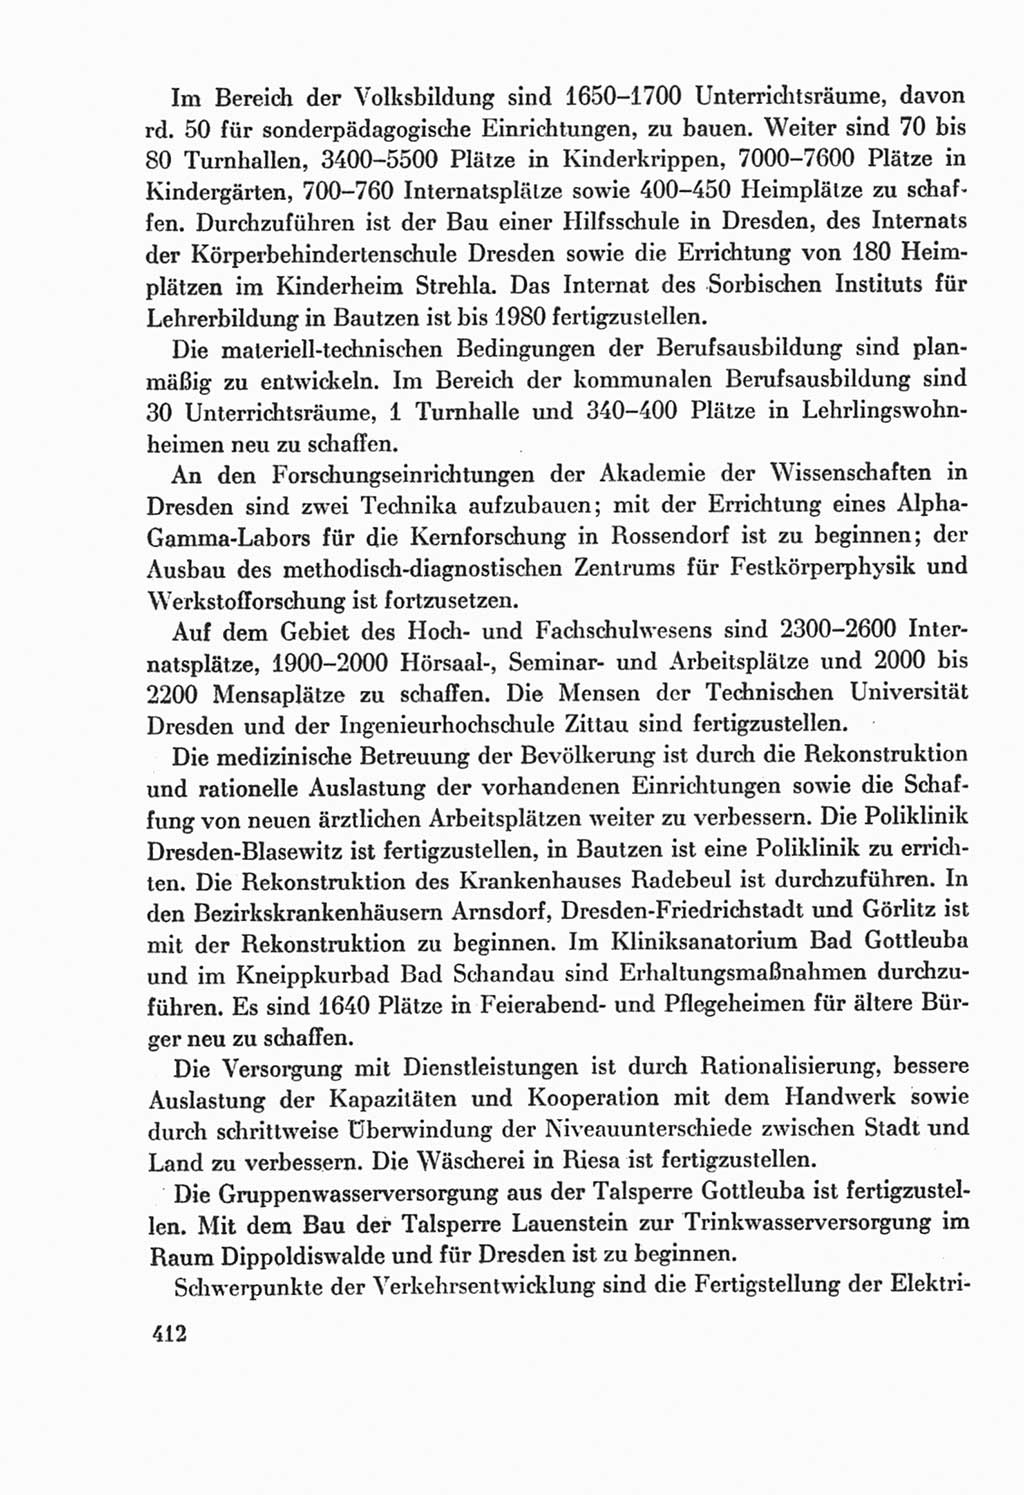 Protokoll der Verhandlungen des Ⅸ. Parteitages der Sozialistischen Einheitspartei Deutschlands (SED) [Deutsche Demokratische Republik (DDR)] 1976, Band 2, Seite 412 (Prot. Verh. Ⅸ. PT SED DDR 1976, Bd. 2, S. 412)